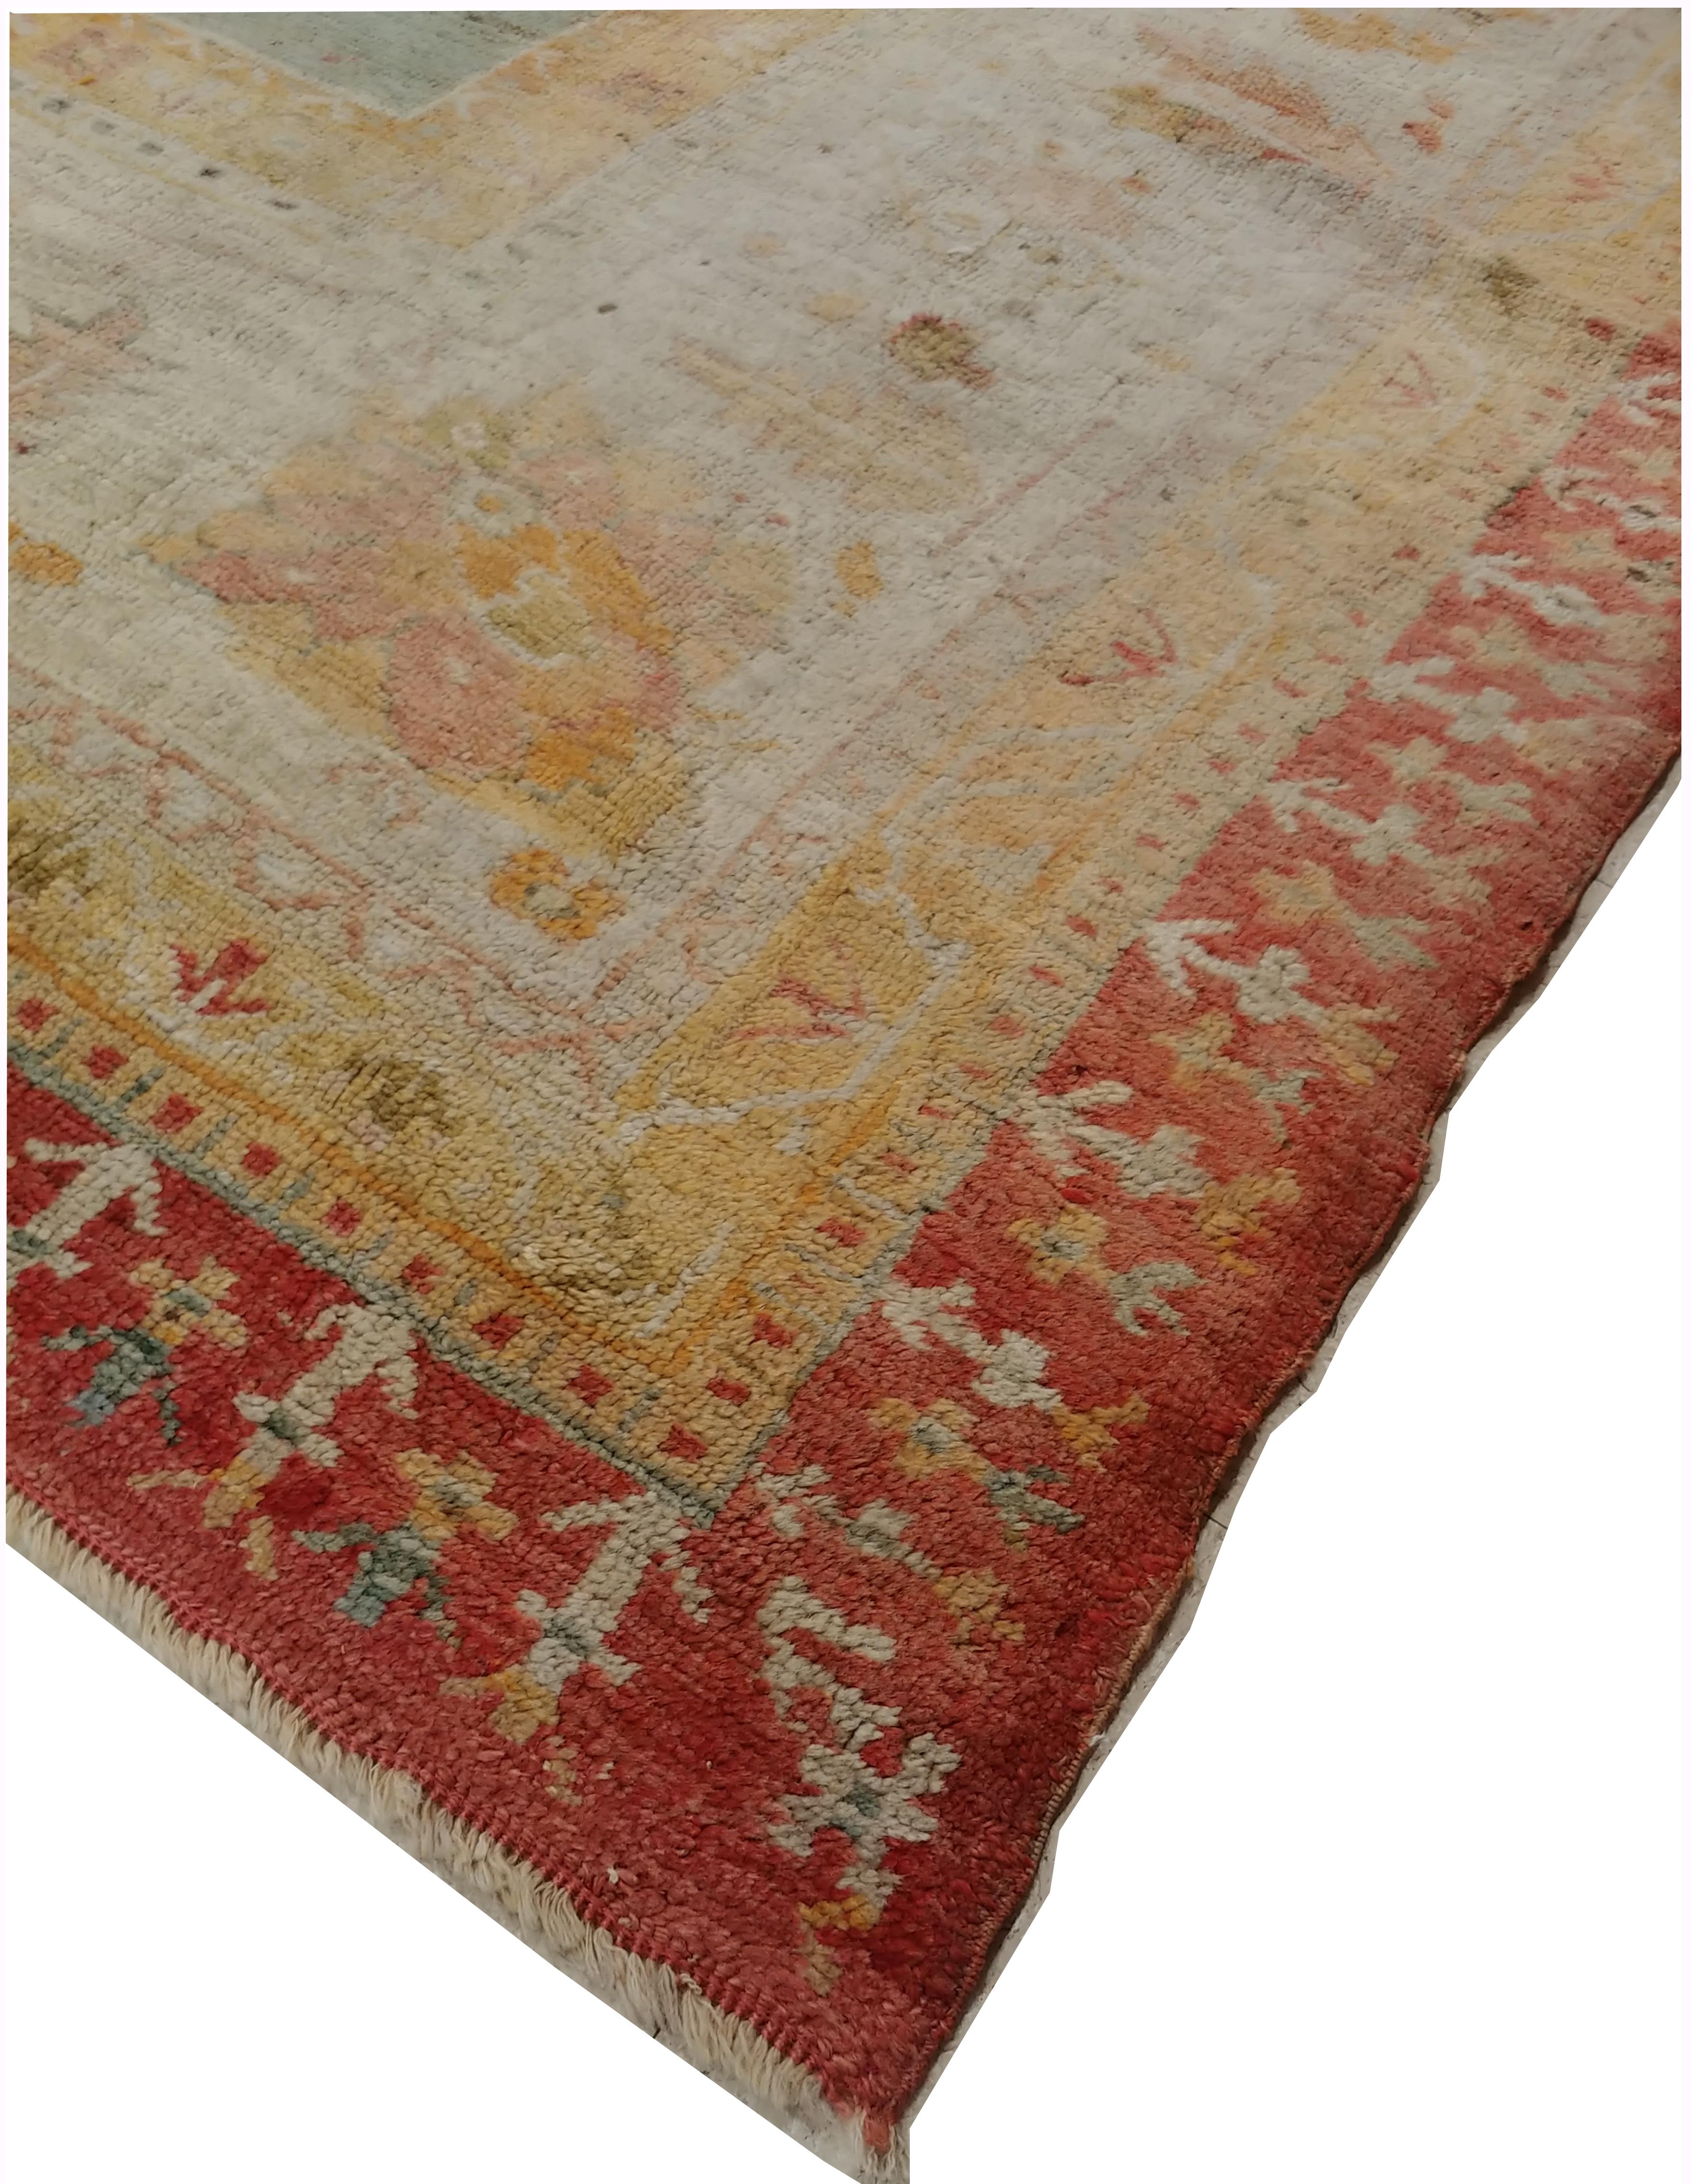 Antique Oushak Carpet, Handmade Turkish Oriental Rug, Beige, Coral, Light Blue For Sale 1